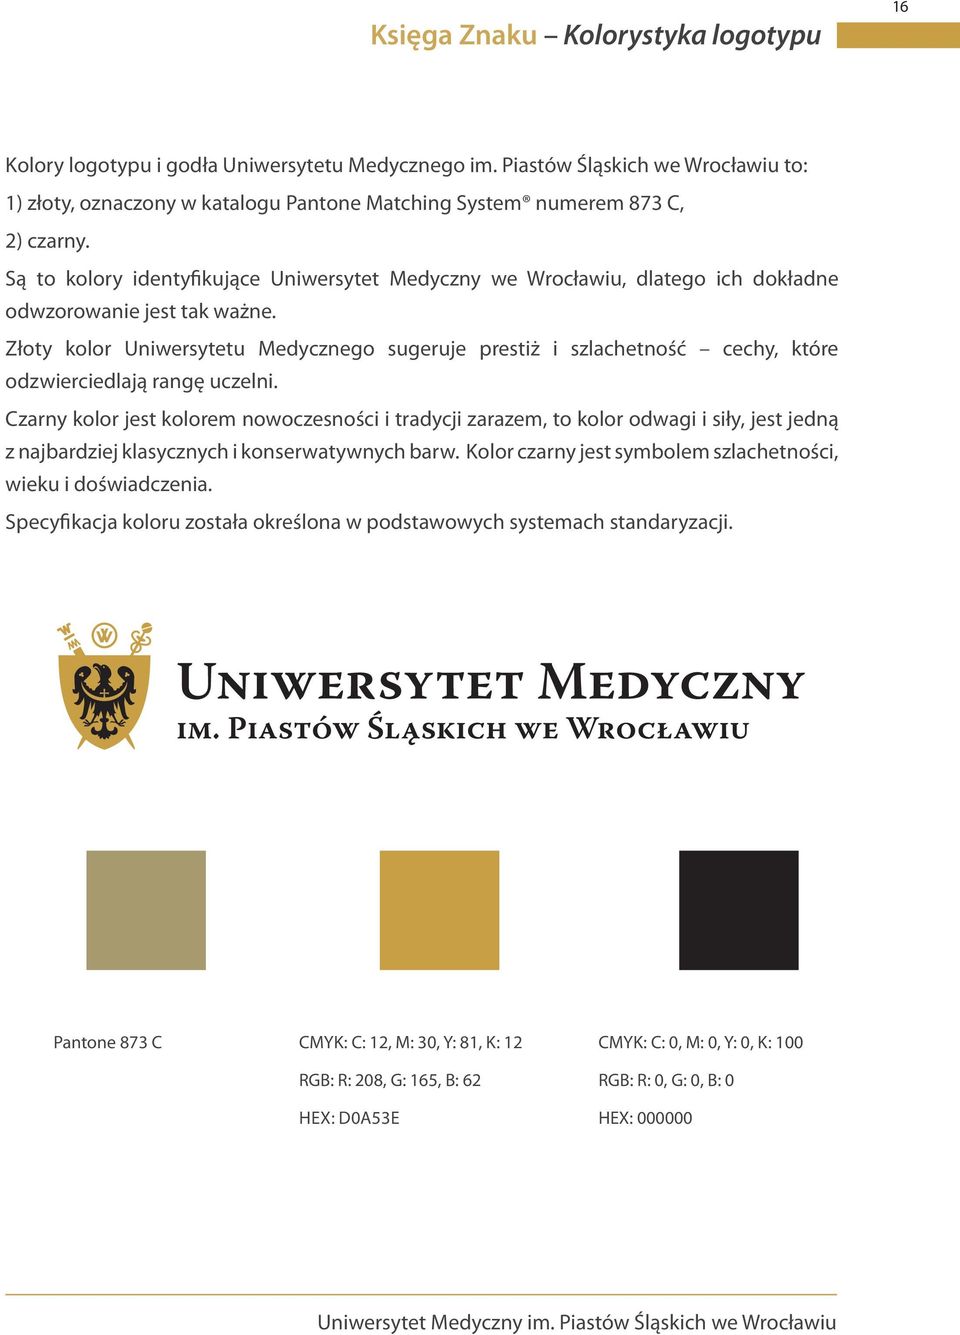 Są to kolory identyfikujące Uniwersytet Medyczny we Wrocławiu, dlatego ich dokładne odwzorowanie jest tak ważne.